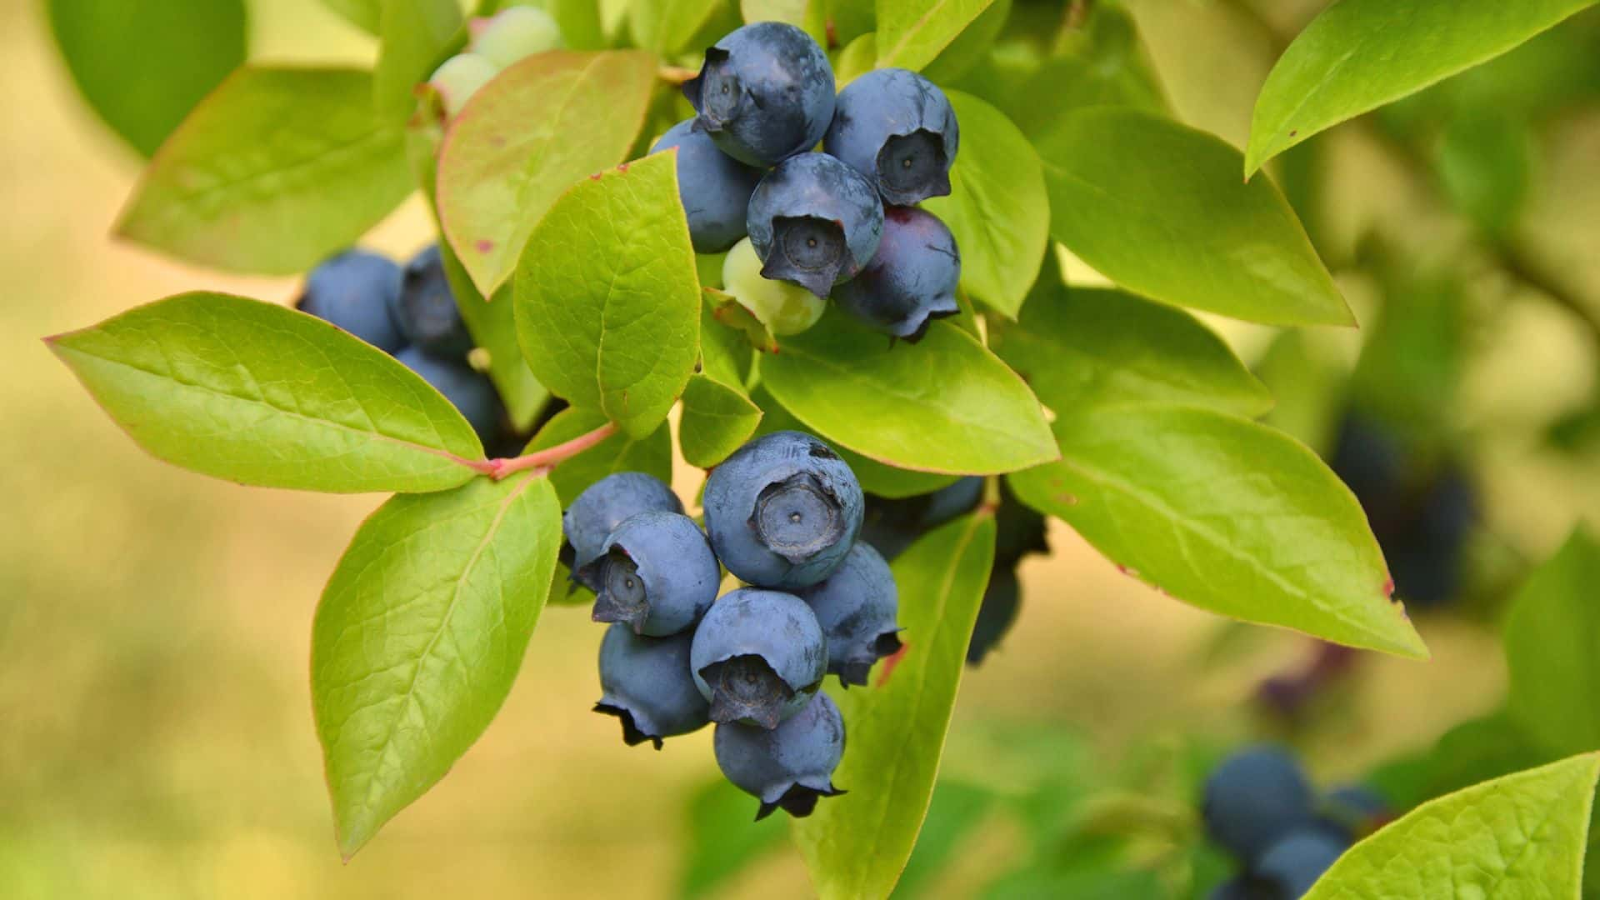 Do blueberry bushes produce fruit every year